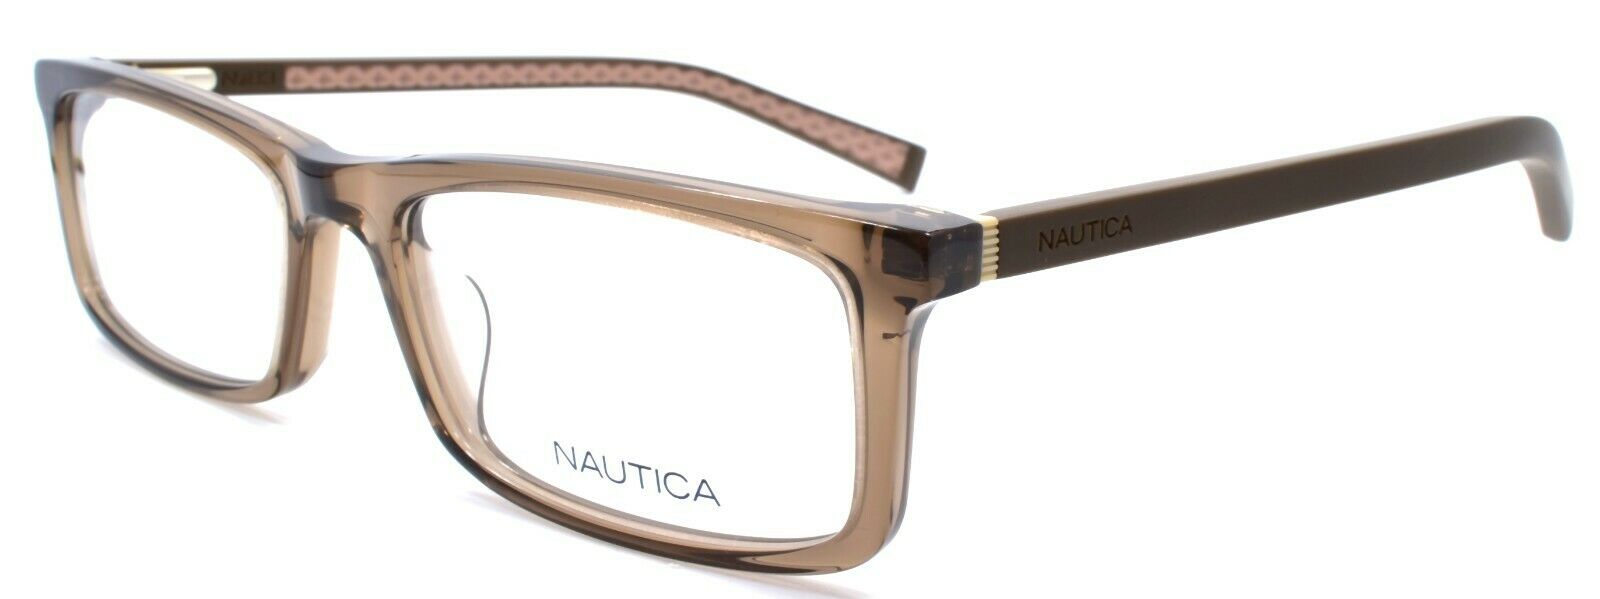 1-Nautica N8162 200 Men's Eyeglasses Frames 53-18-140 Brown Crystal-688940465457-IKSpecs